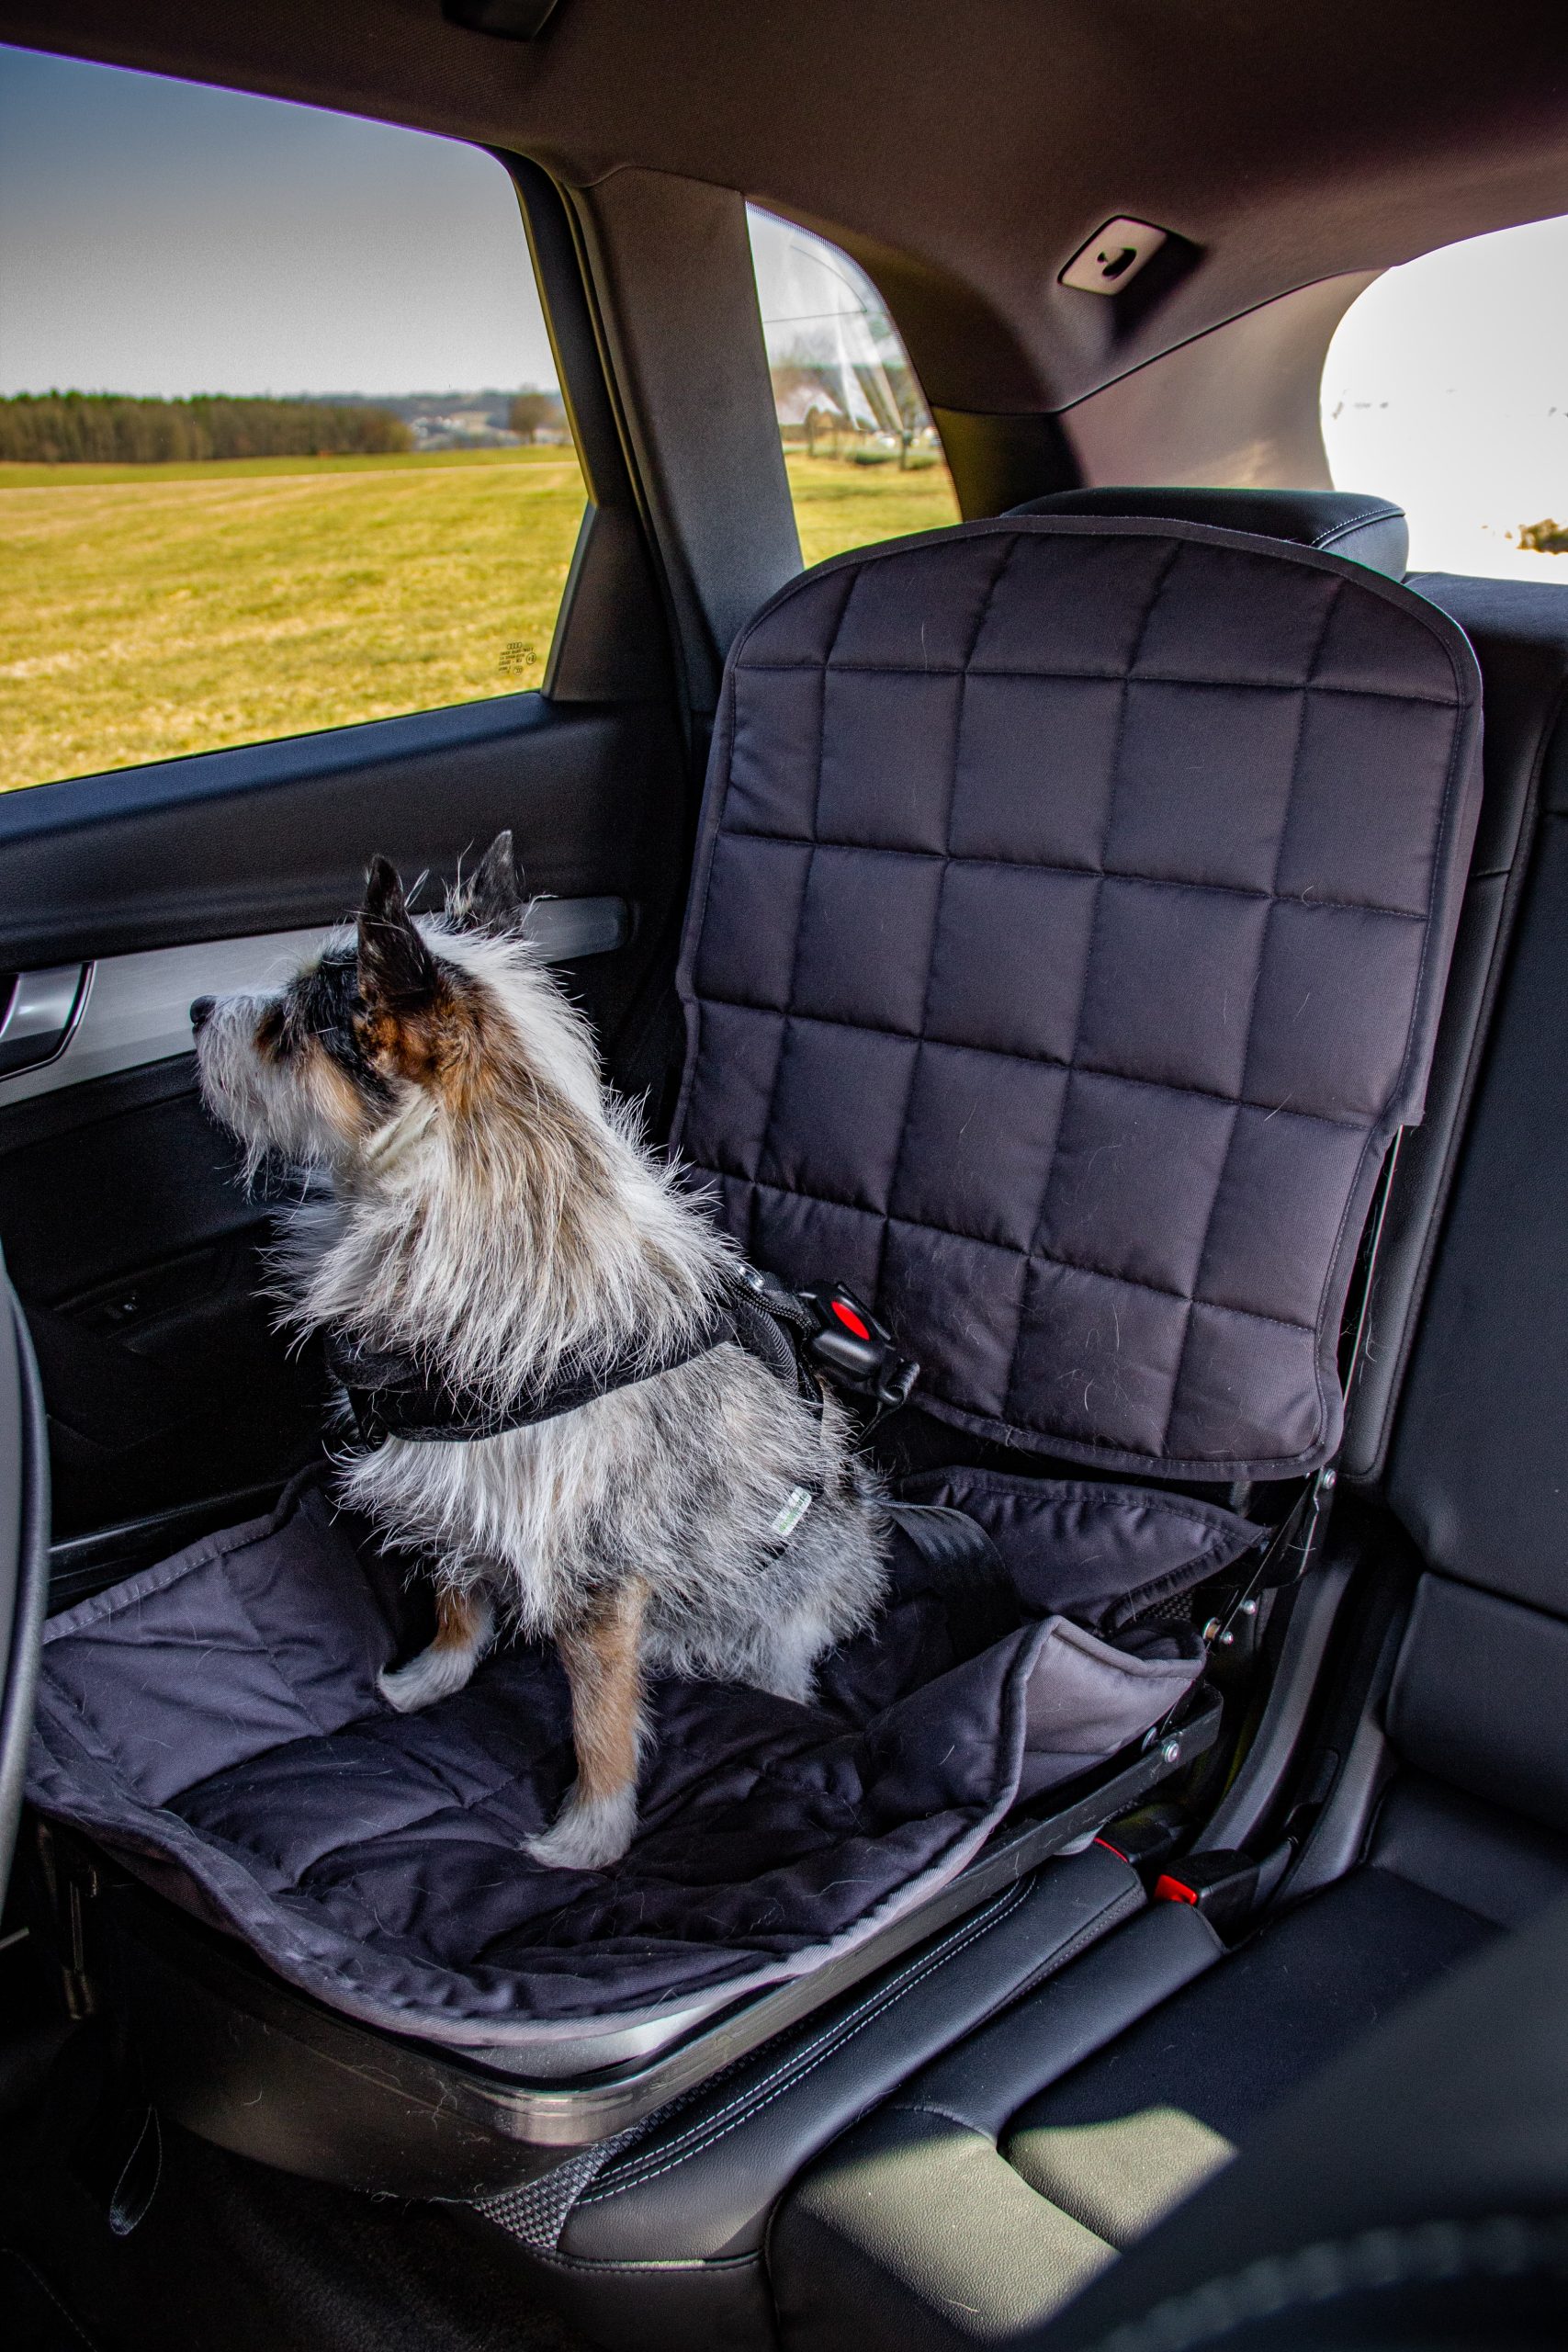 Hunde Autositz mit Sicherheitsgurt - das Original